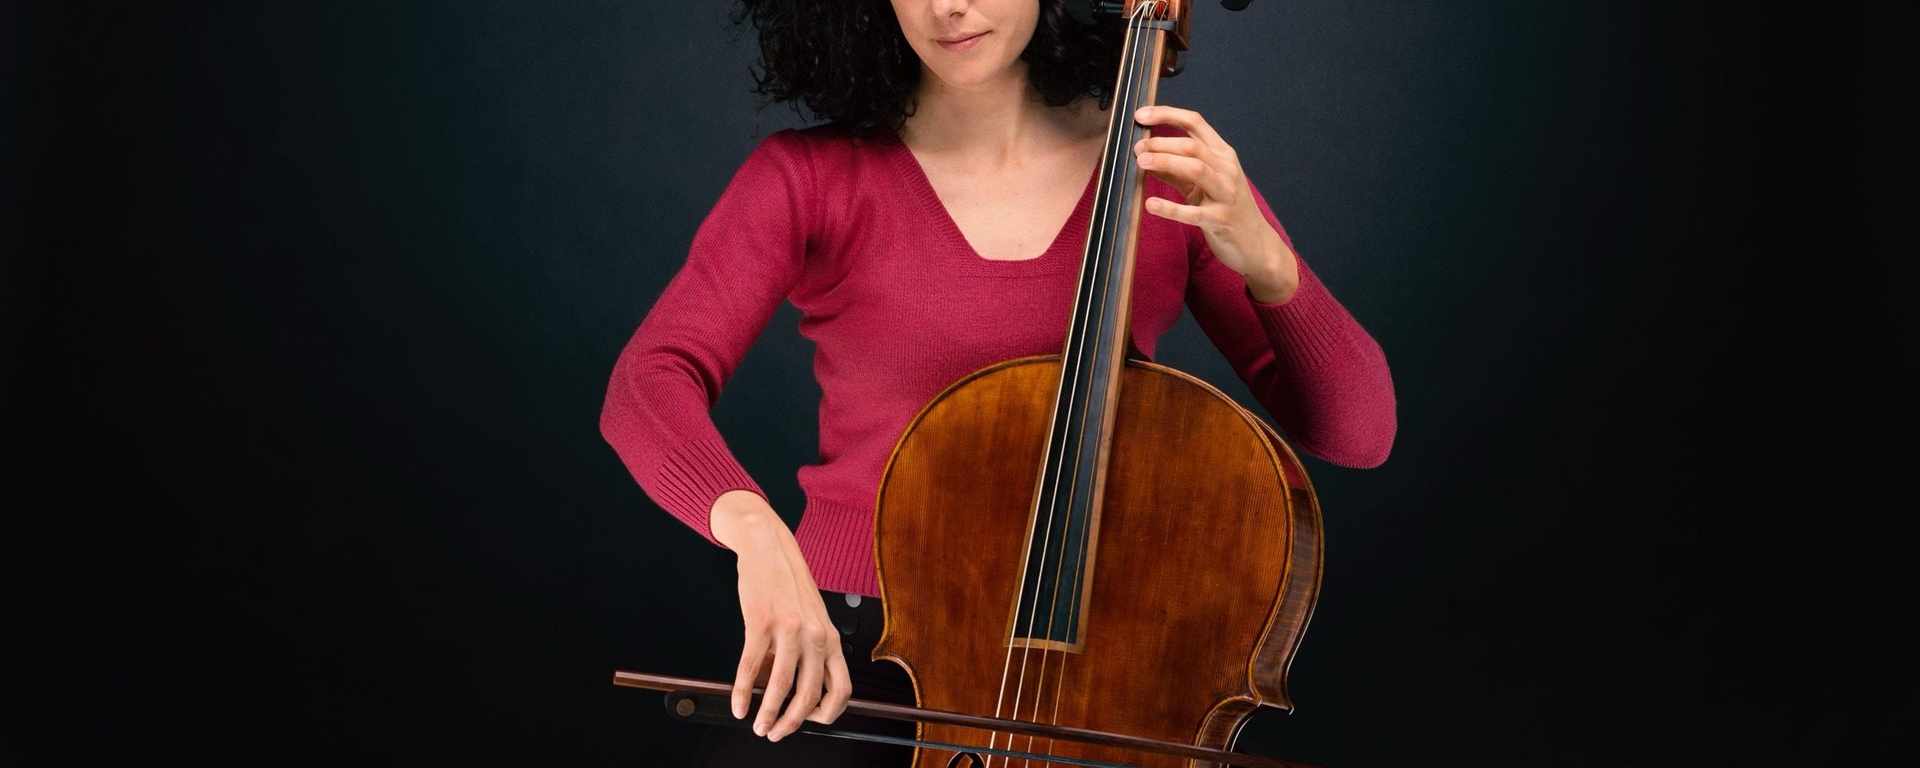 Cellounterricht für Amateure, Fortgeschritte, Studenten, Profis